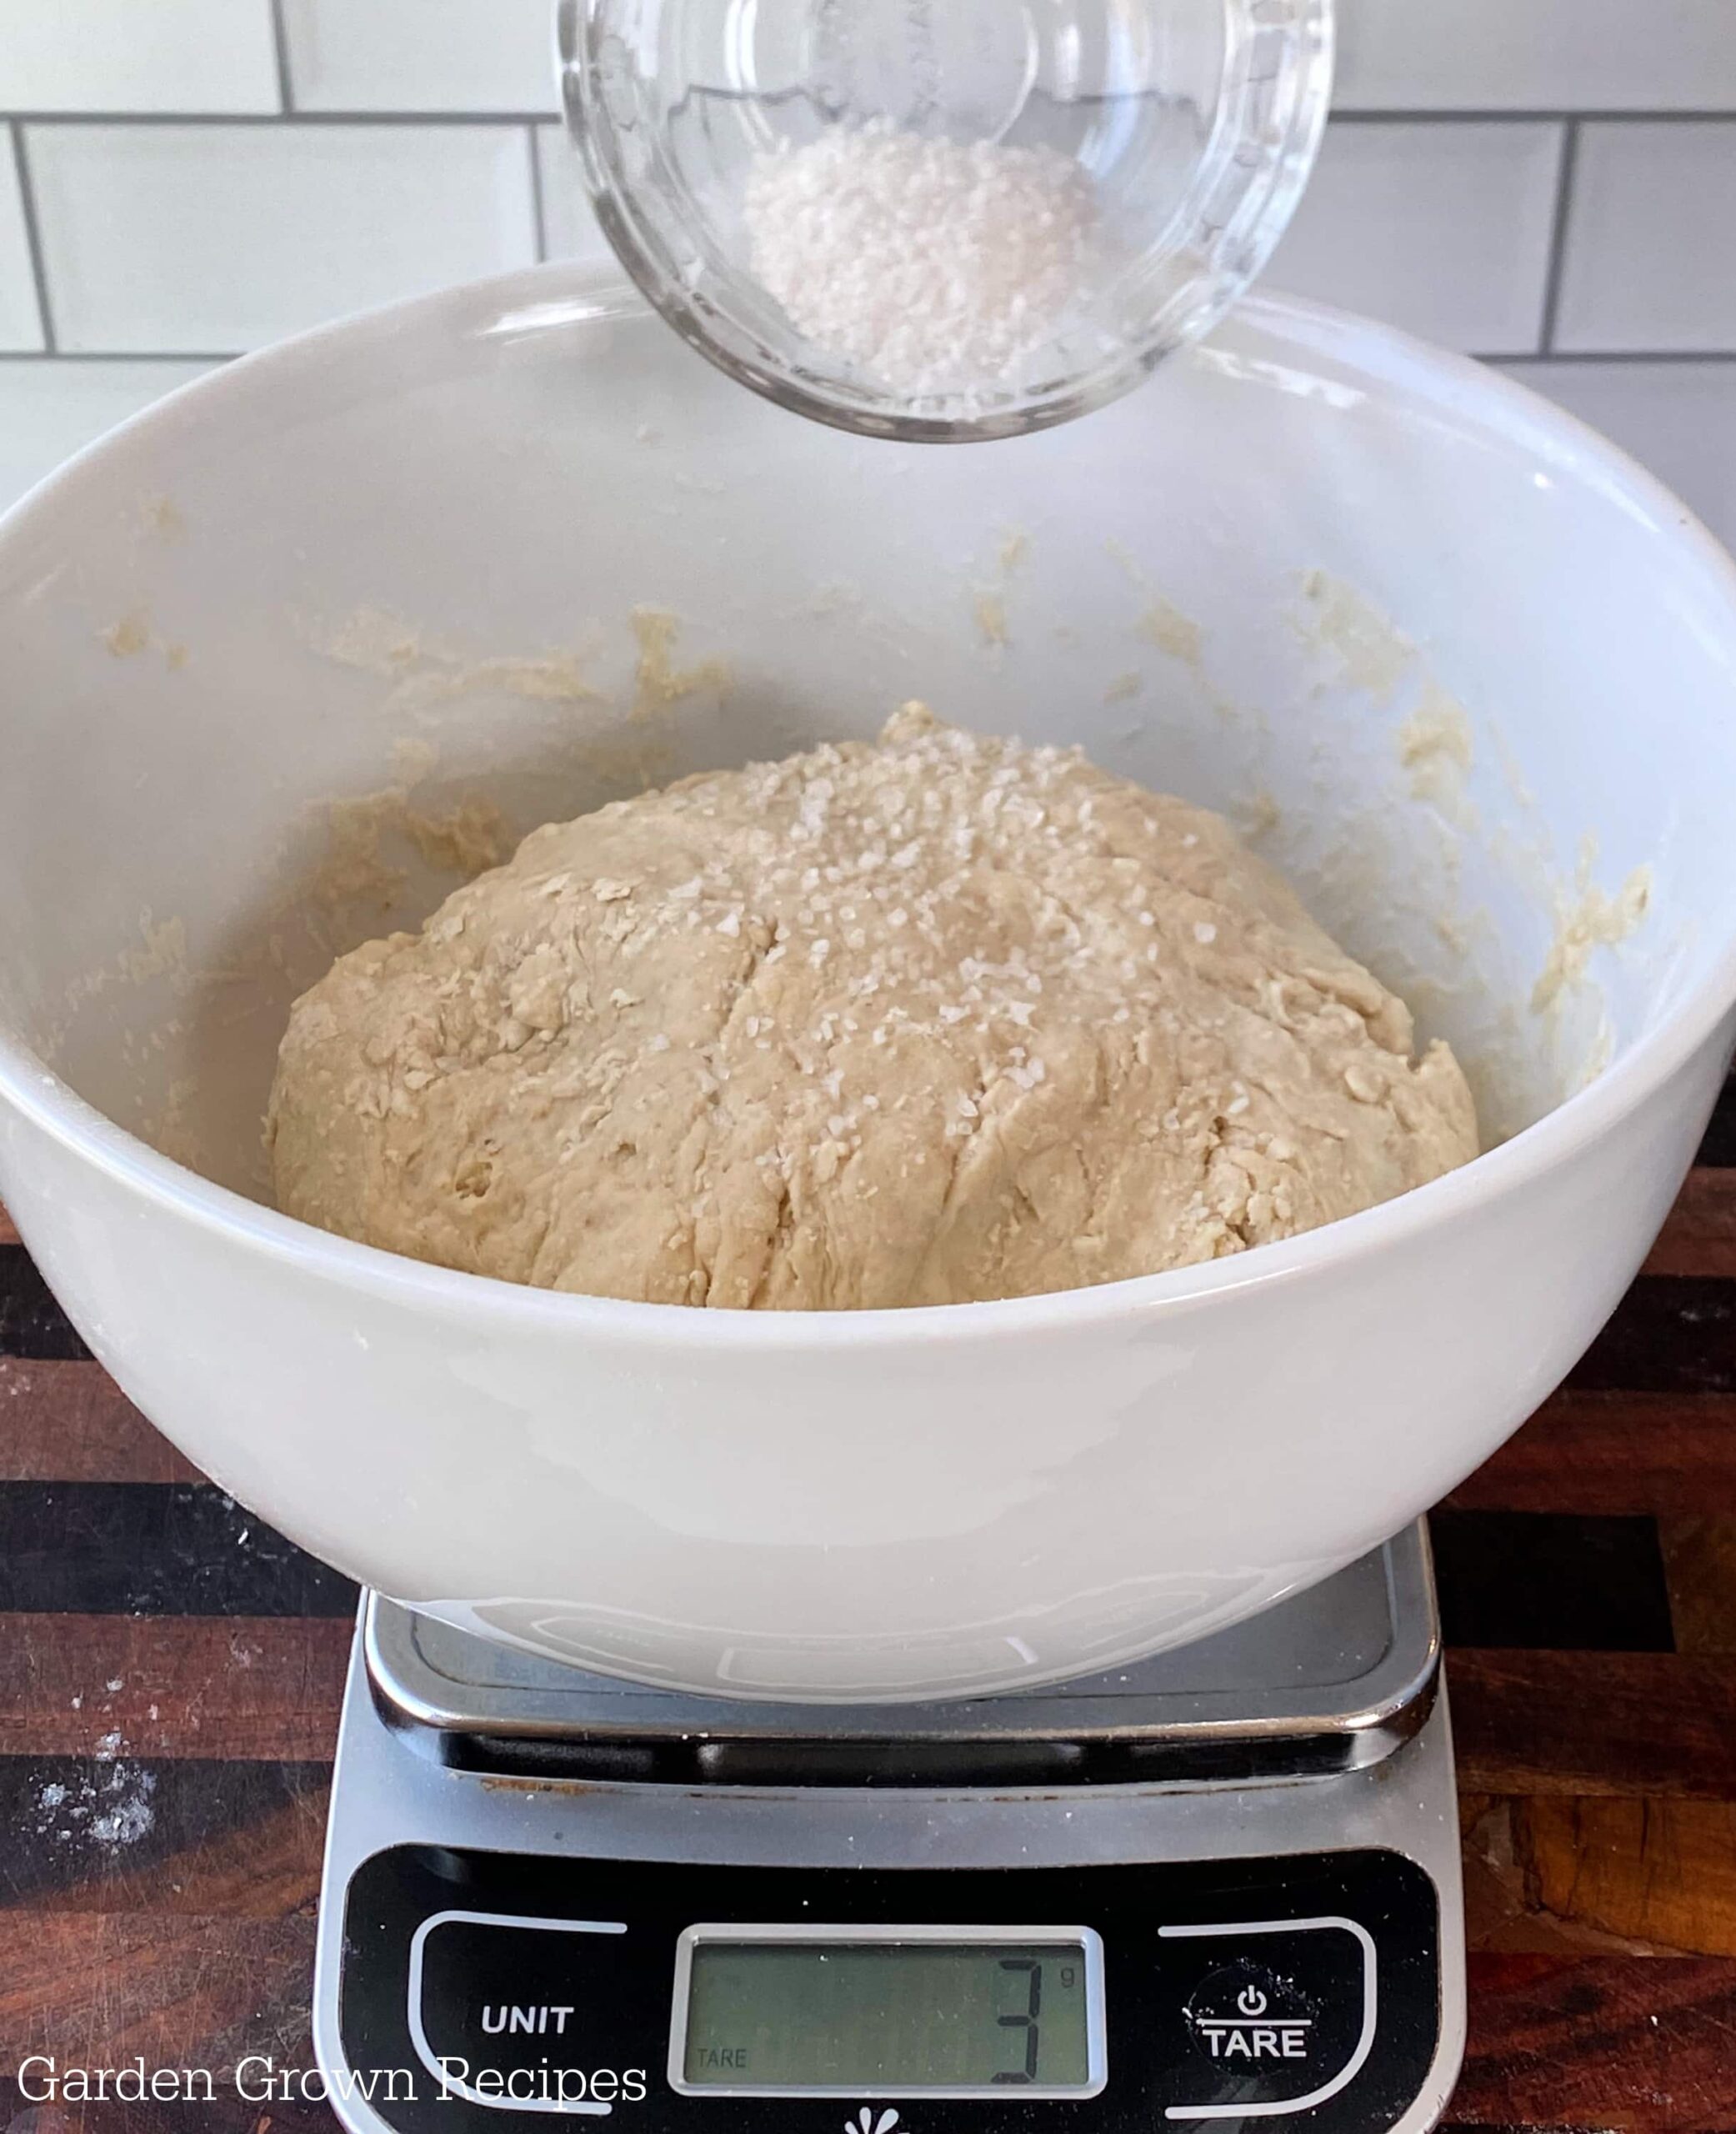 homemade bread dough